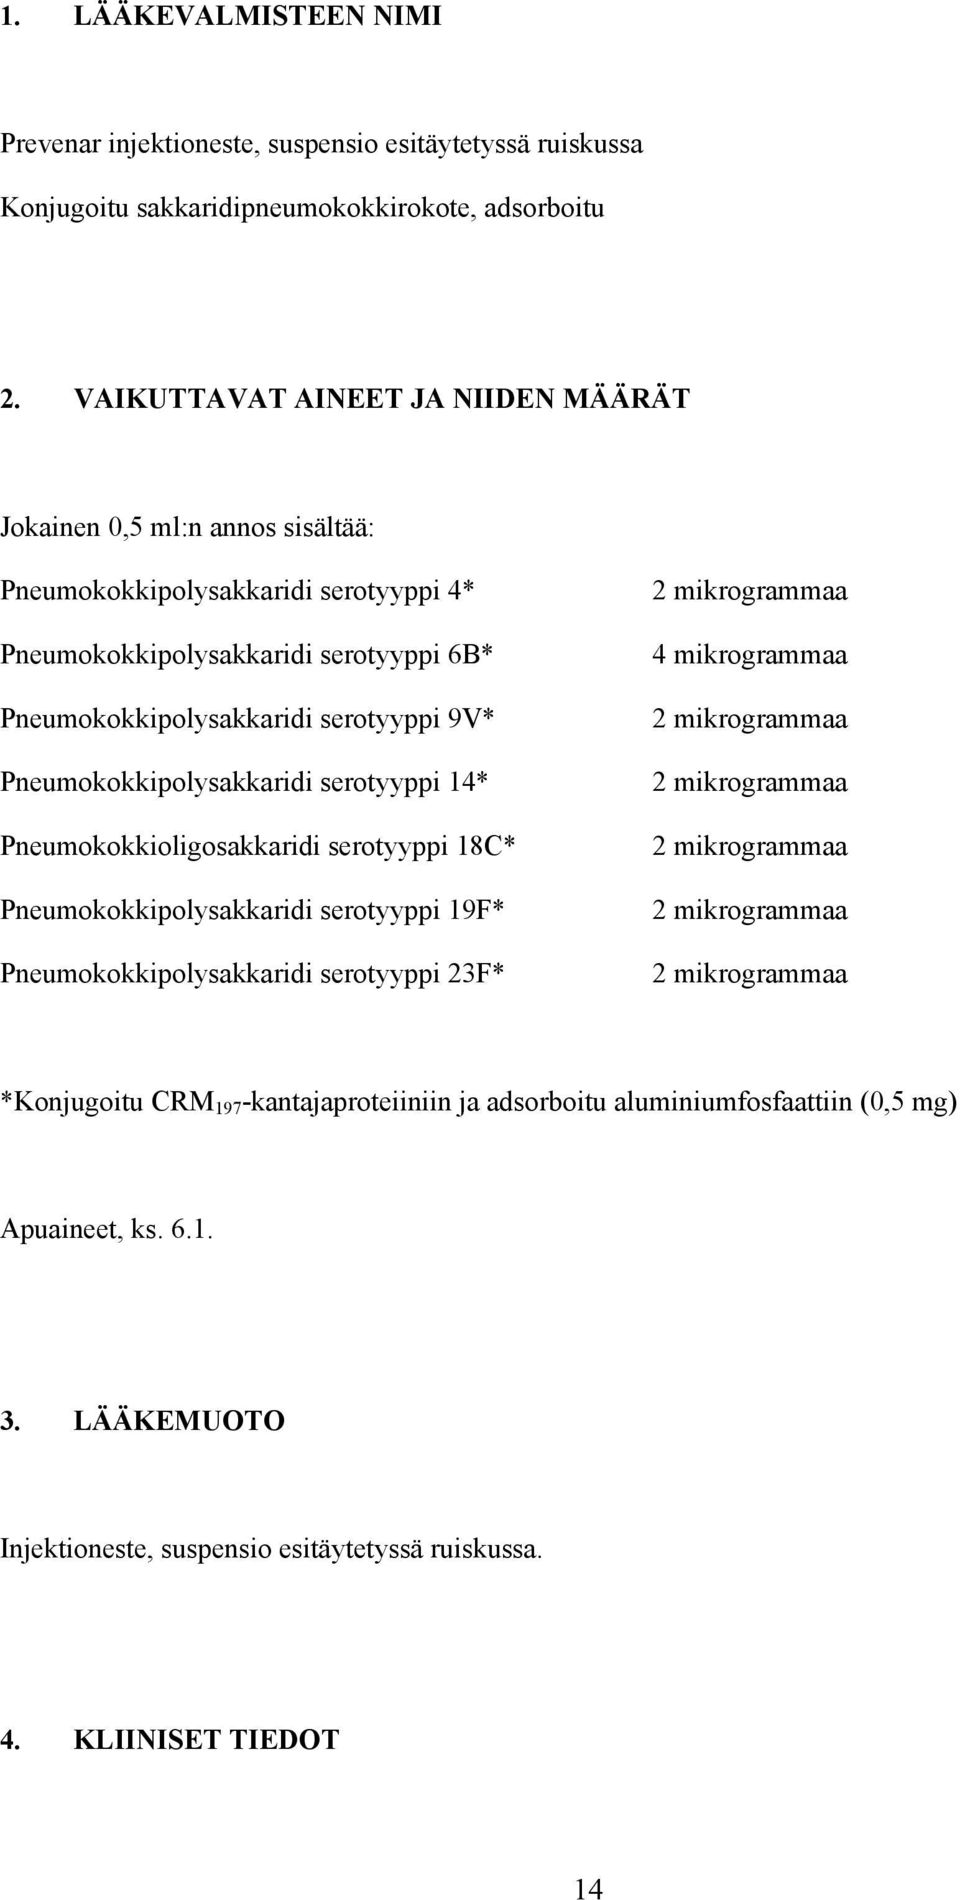 Pneumokokkipolysakkaridi serotyyppi 14* Pneumokokkioligosakkaridi serotyyppi 18C* Pneumokokkipolysakkaridi serotyyppi 19F* Pneumokokkipolysakkaridi serotyyppi 23F* 2 mikrogrammaa 4 mikrogrammaa 2